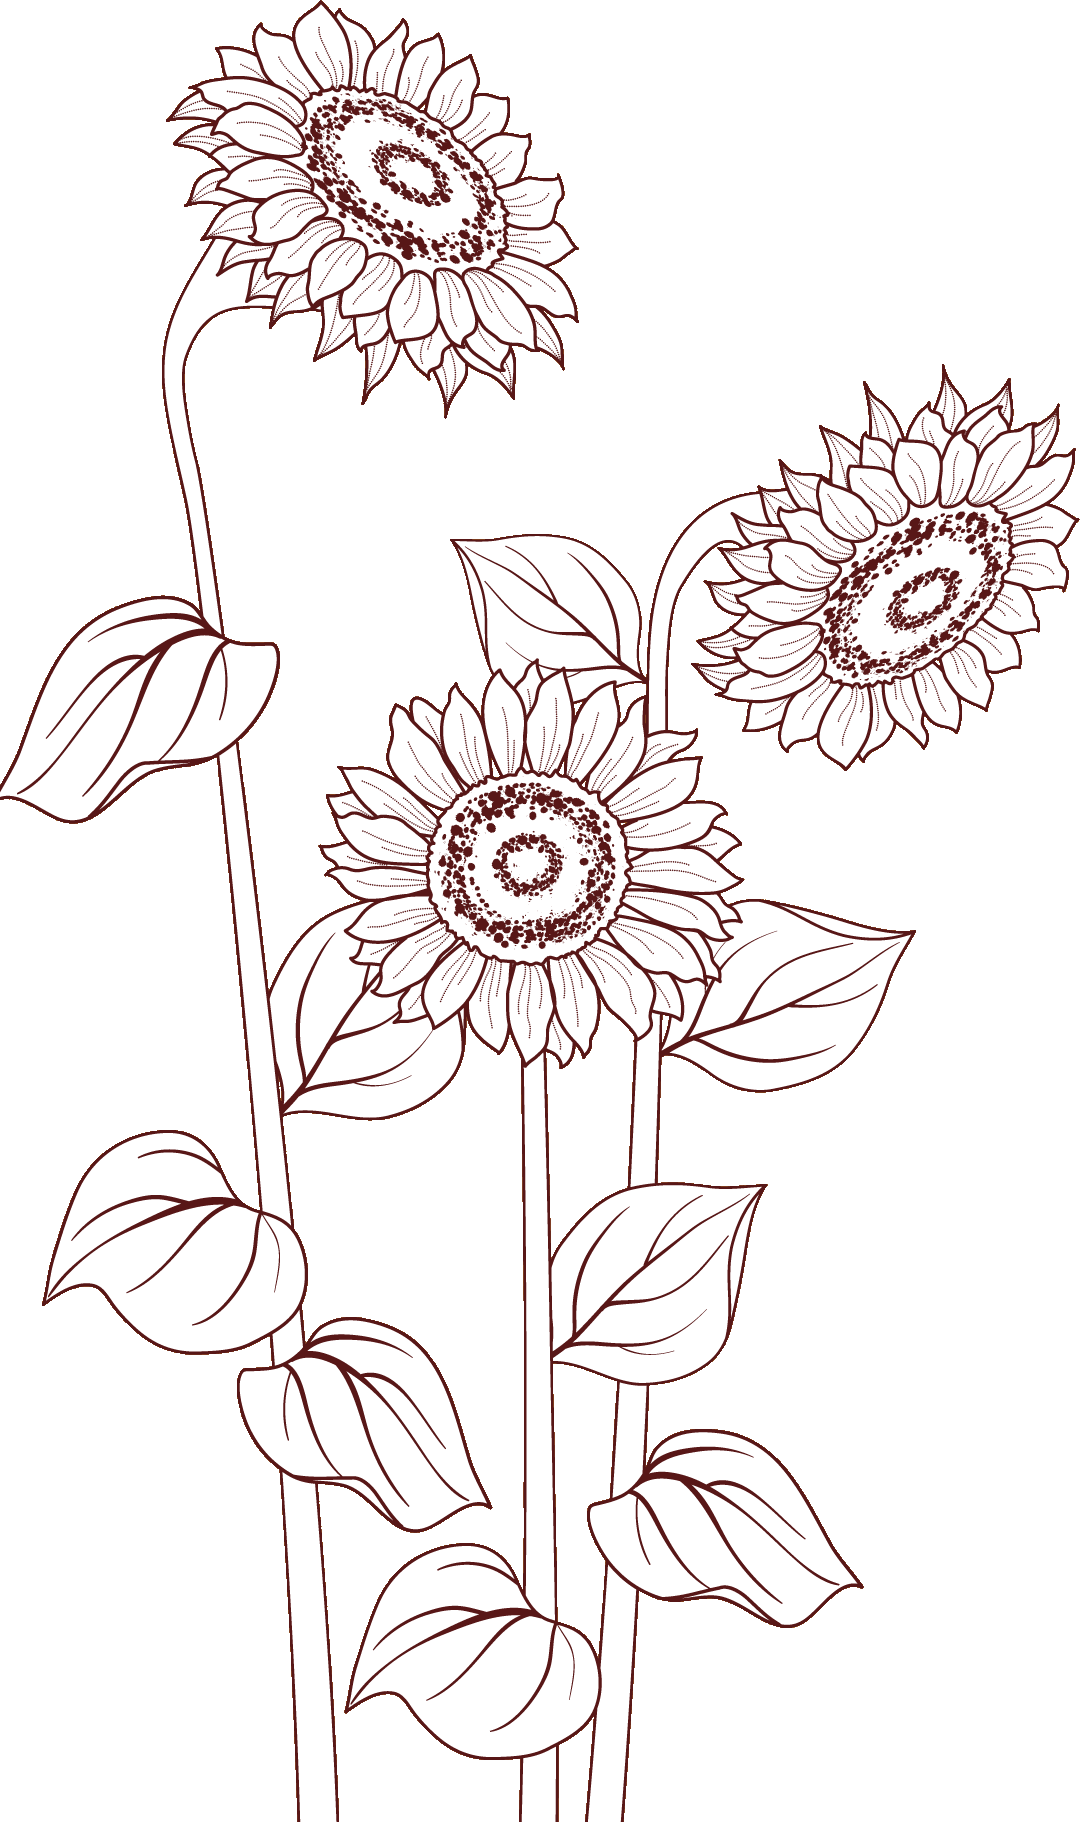 リアルな花のイラスト フリー素材 白黒 モノクロno 2018 ひまわり